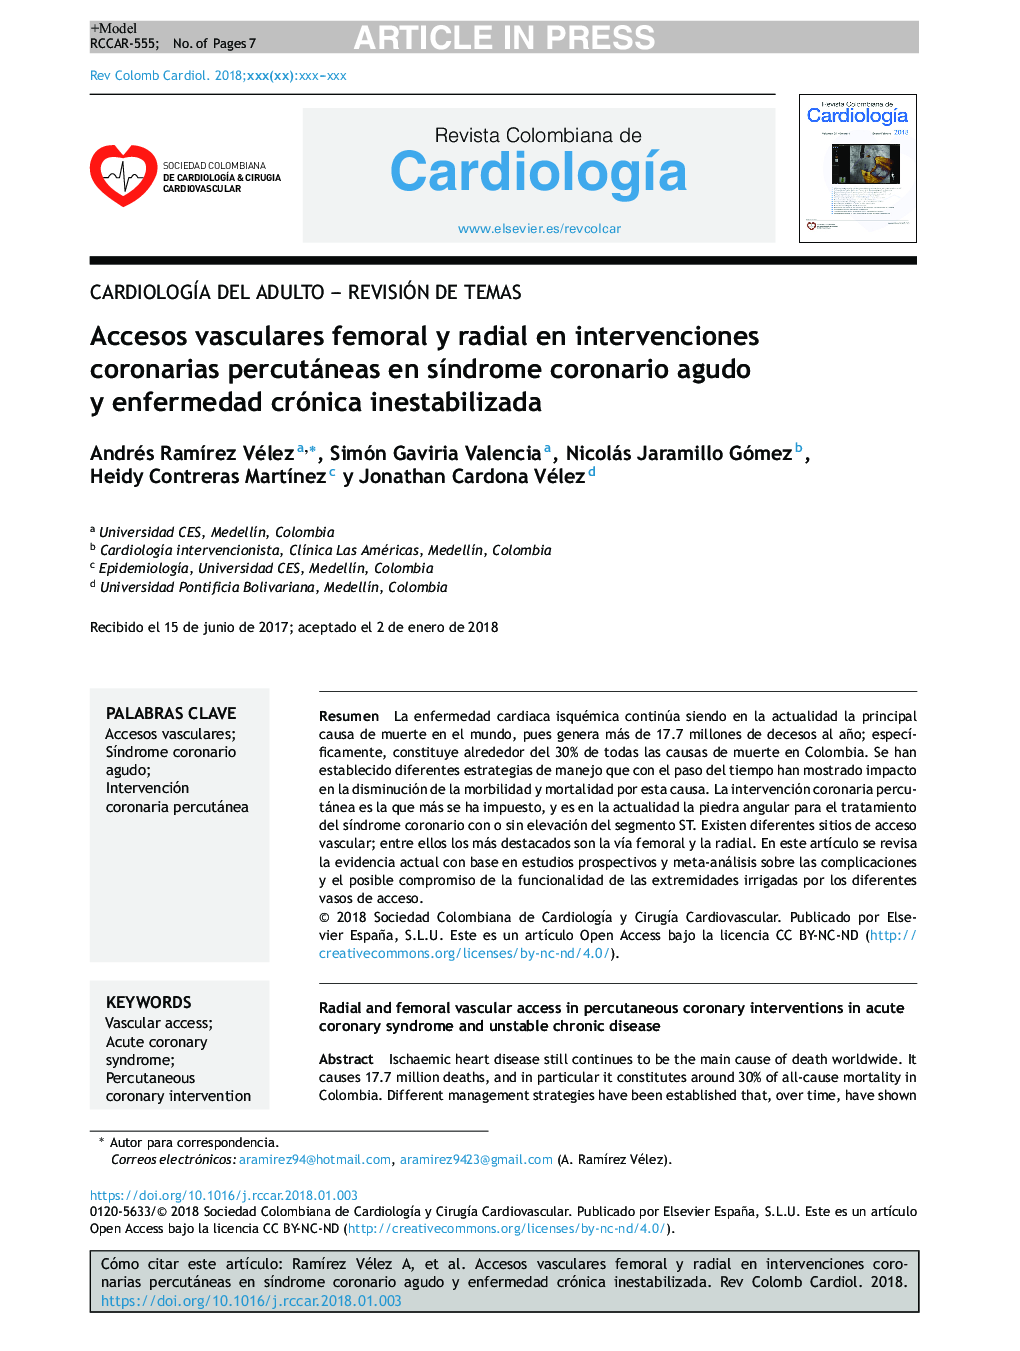 Accesos vasculares femoral y radial en intervenciones coronarias percutáneas en sÃ­ndrome coronario agudo y enfermedad crónica inestabilizada